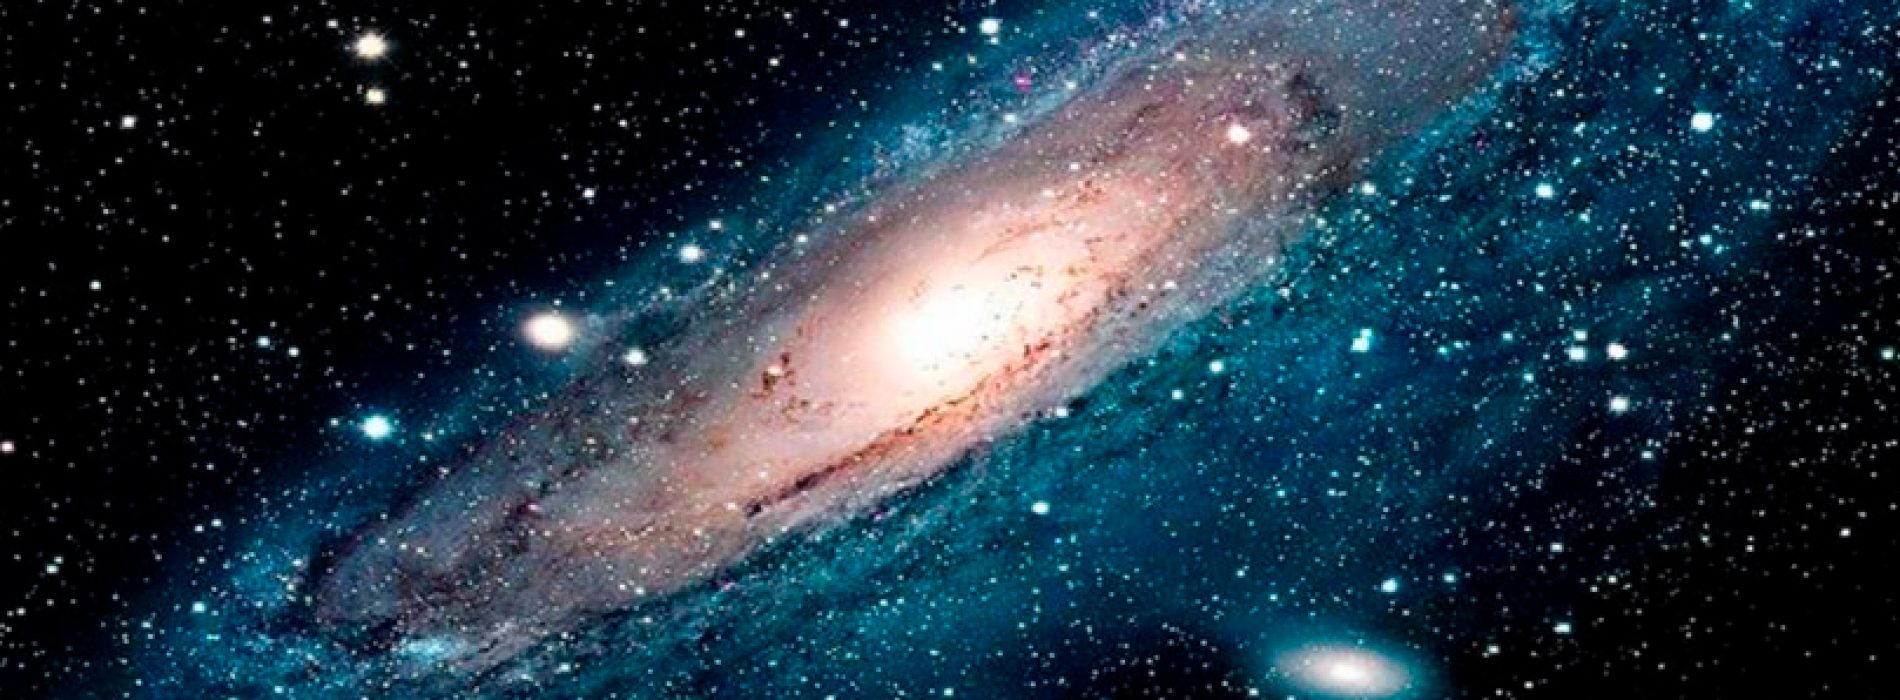 Taller de Astronomía «Nuevos Mundos en el Universo» – Universidad de Chile (6 de diciembre 2017)